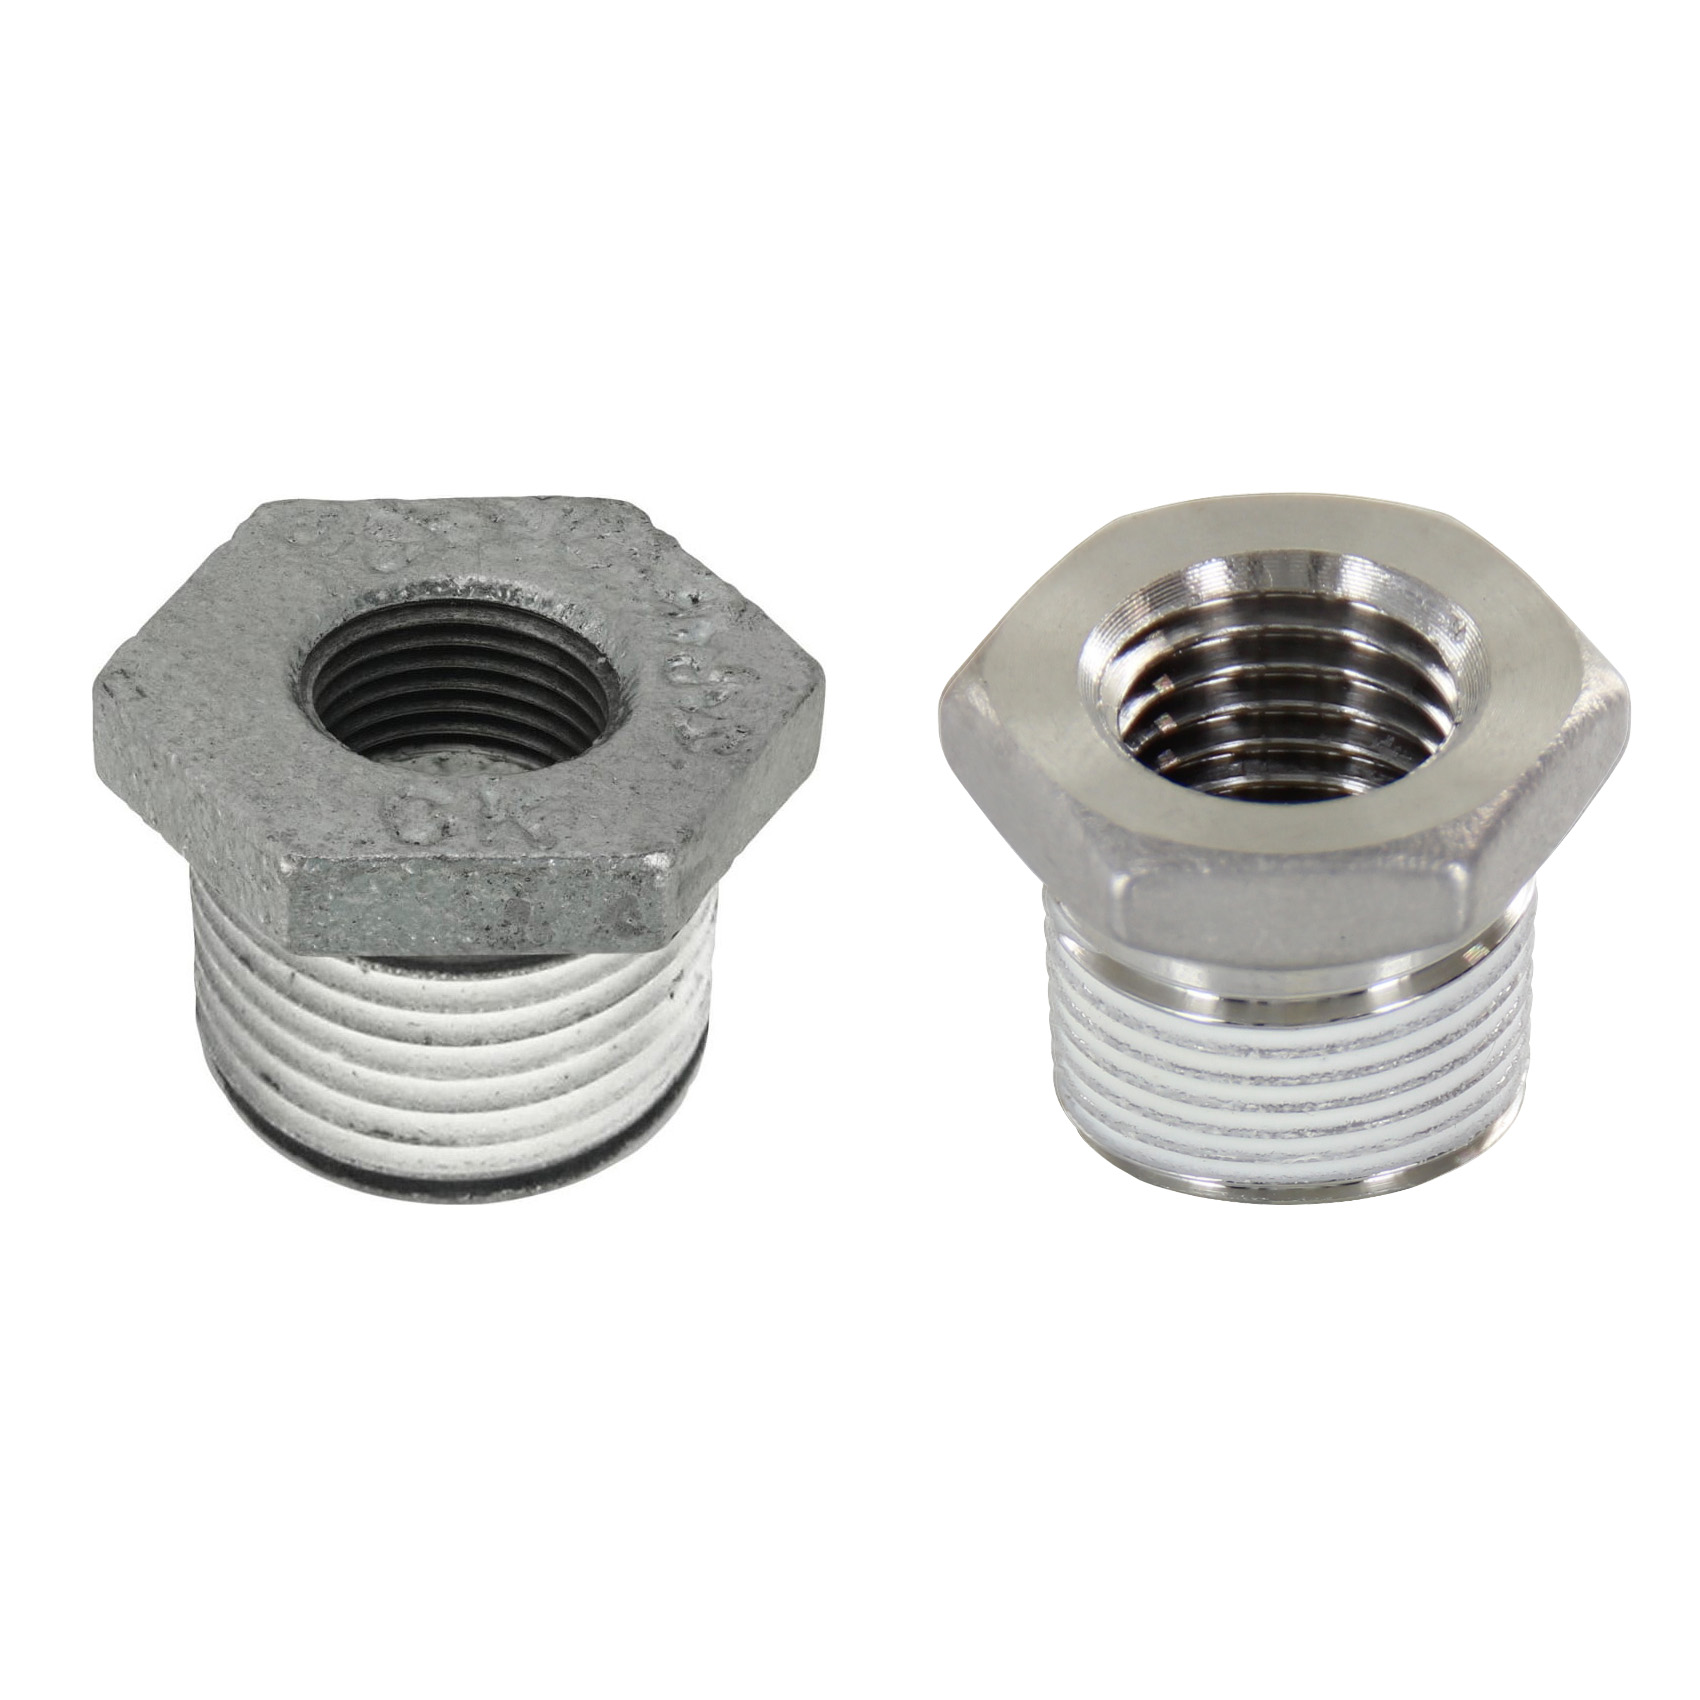 Low Pressure Screw Fittings - Thread Coated Type - Steel Pipe Fittings - Bushings (SGCPB12) 